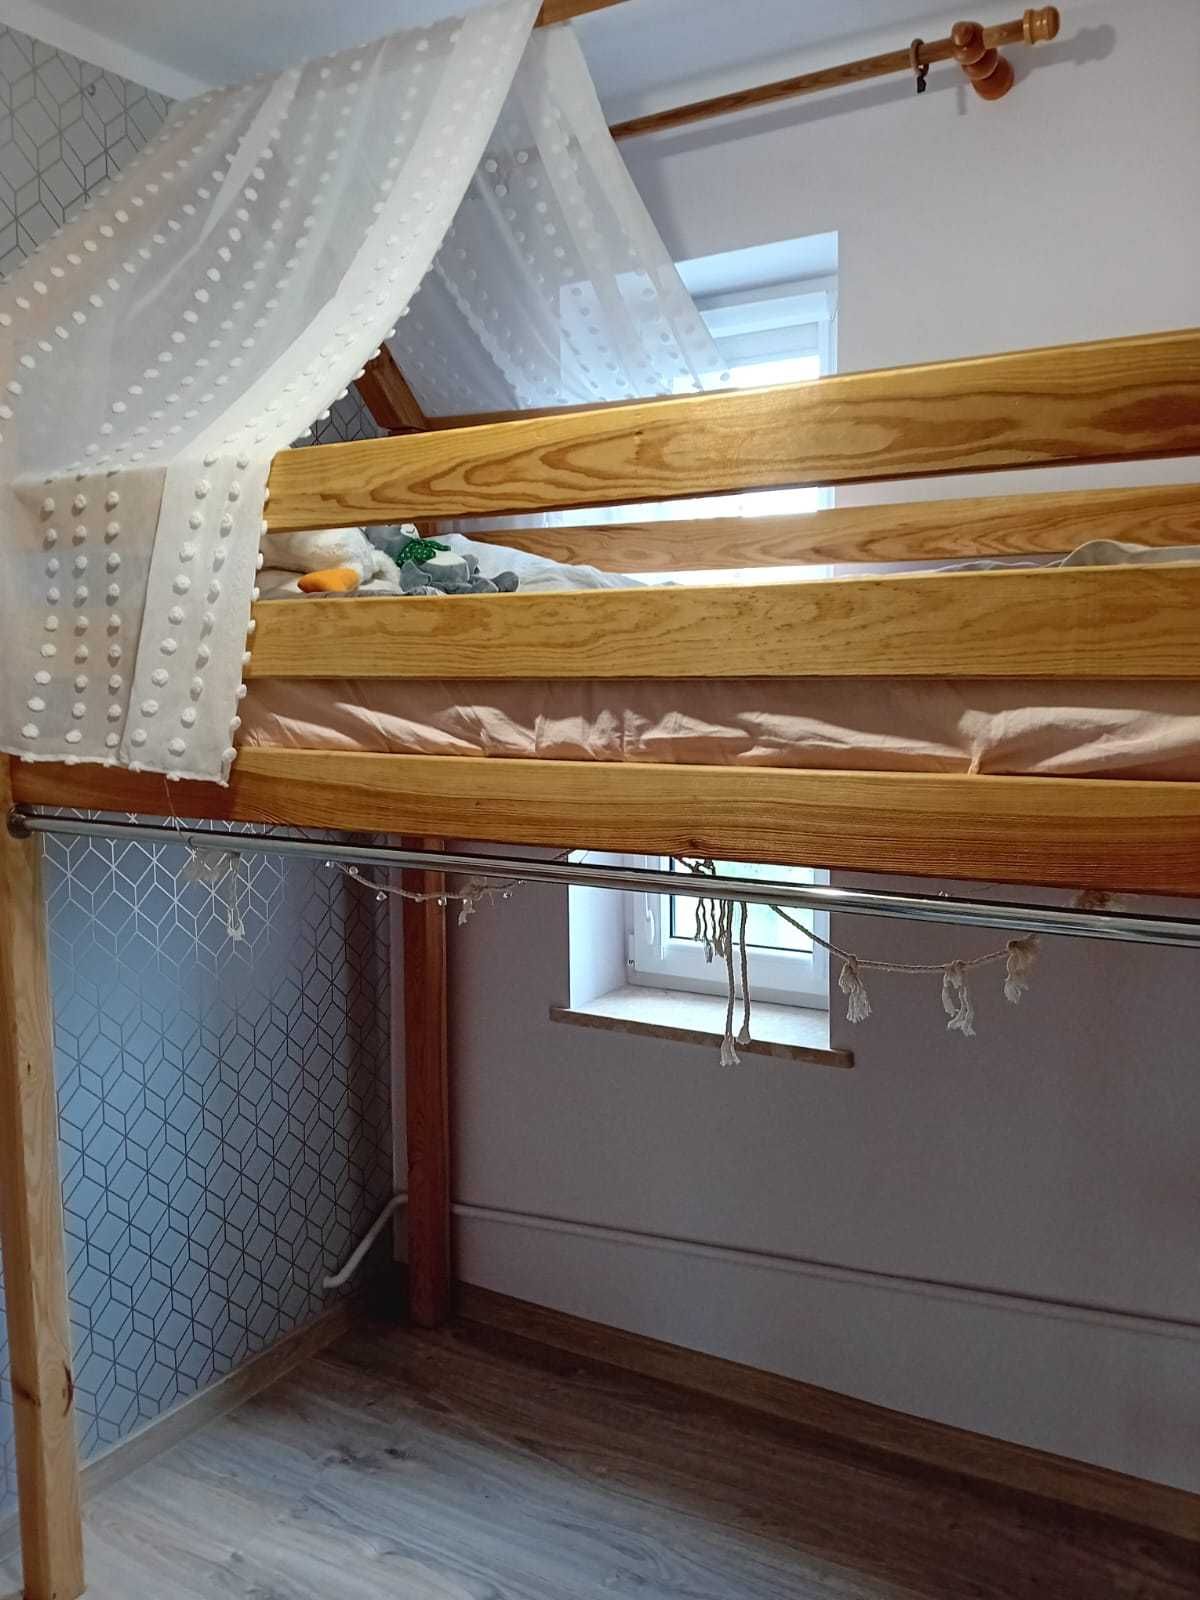 Łóżko drewniane, dziecięce na antresoli